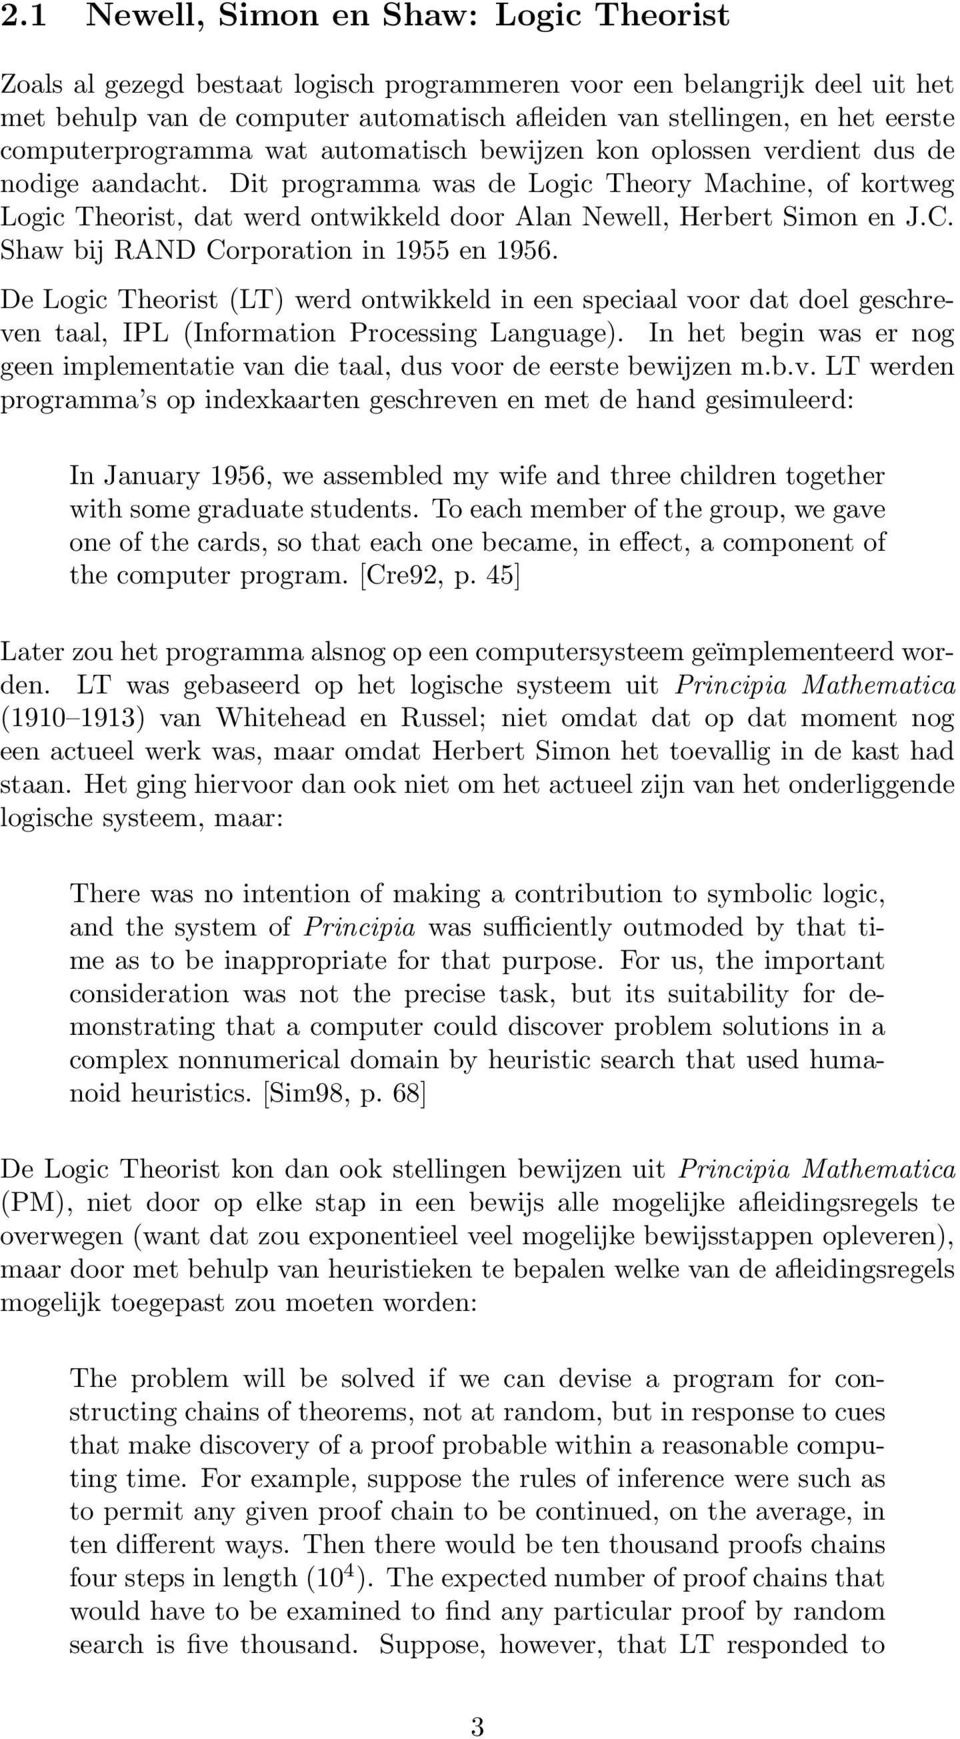 Dit programma was de Logic Theory Machine, of kortweg Logic Theorist, dat werd ontwikkeld door Alan Newell, Herbert Simon en J.C. Shaw bij RAND Corporation in 1955 en 1956.